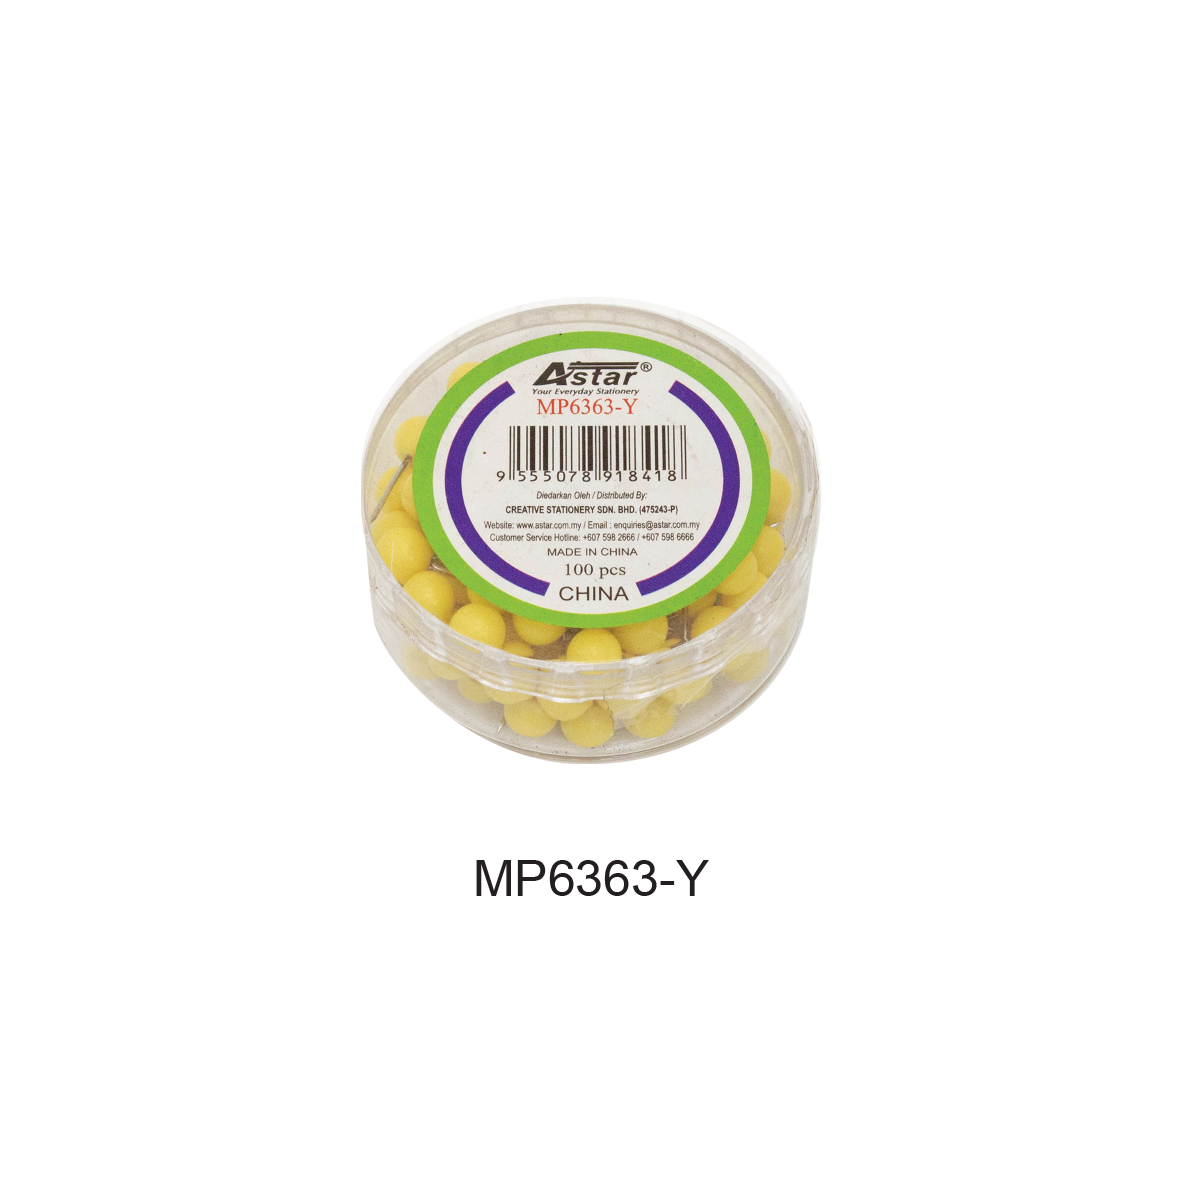 MP6363-Y - ASTAR MAP PIN